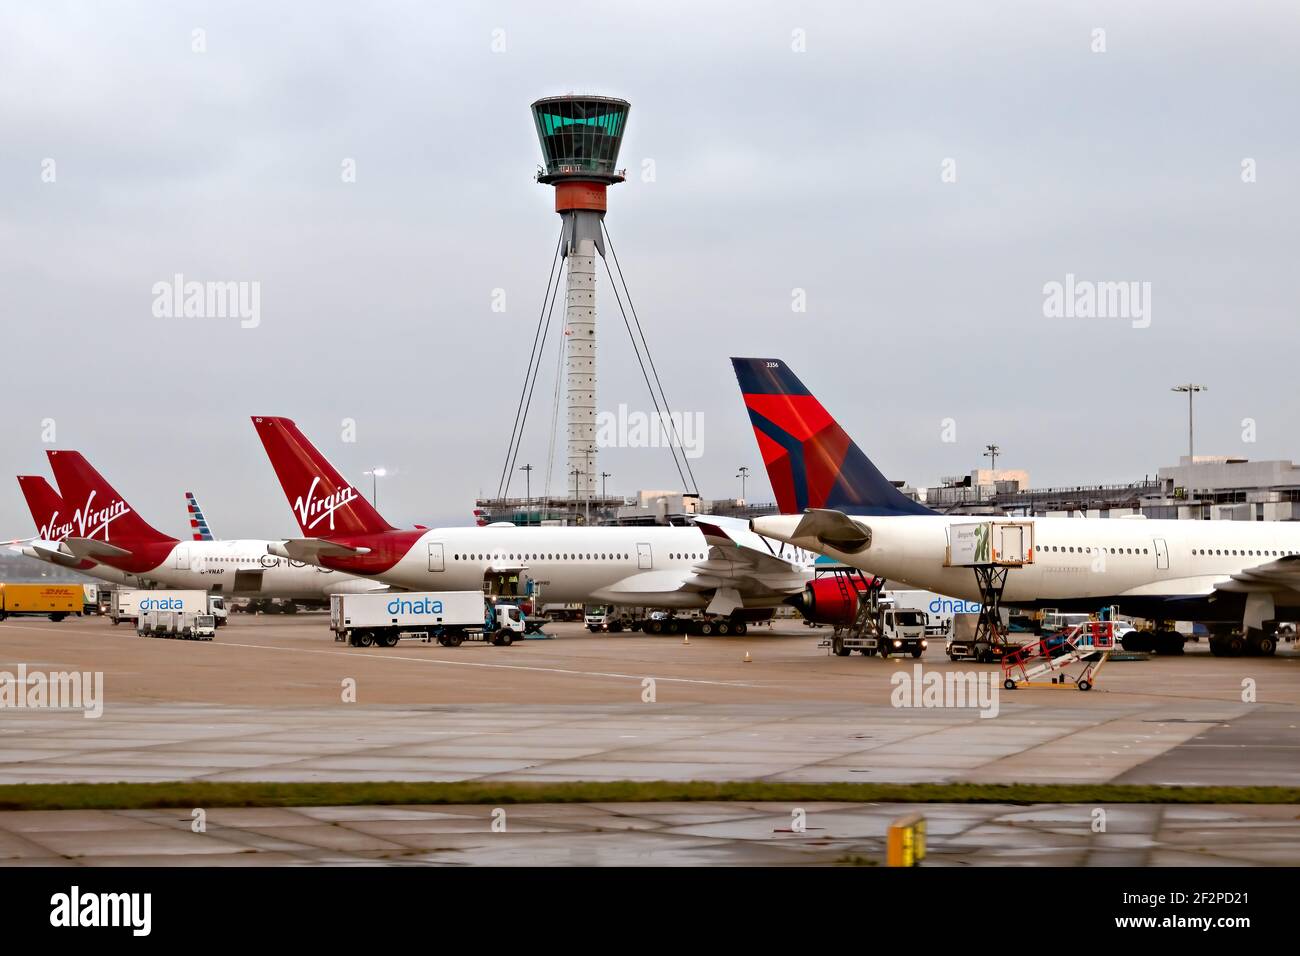 Aeroporto di Heathrow, Londra, 2019 novembre - aerei aerei, Virgin Atlantic e Delta parcheggiati e caricati al terminal con una torre fuori fuoco e. Foto Stock